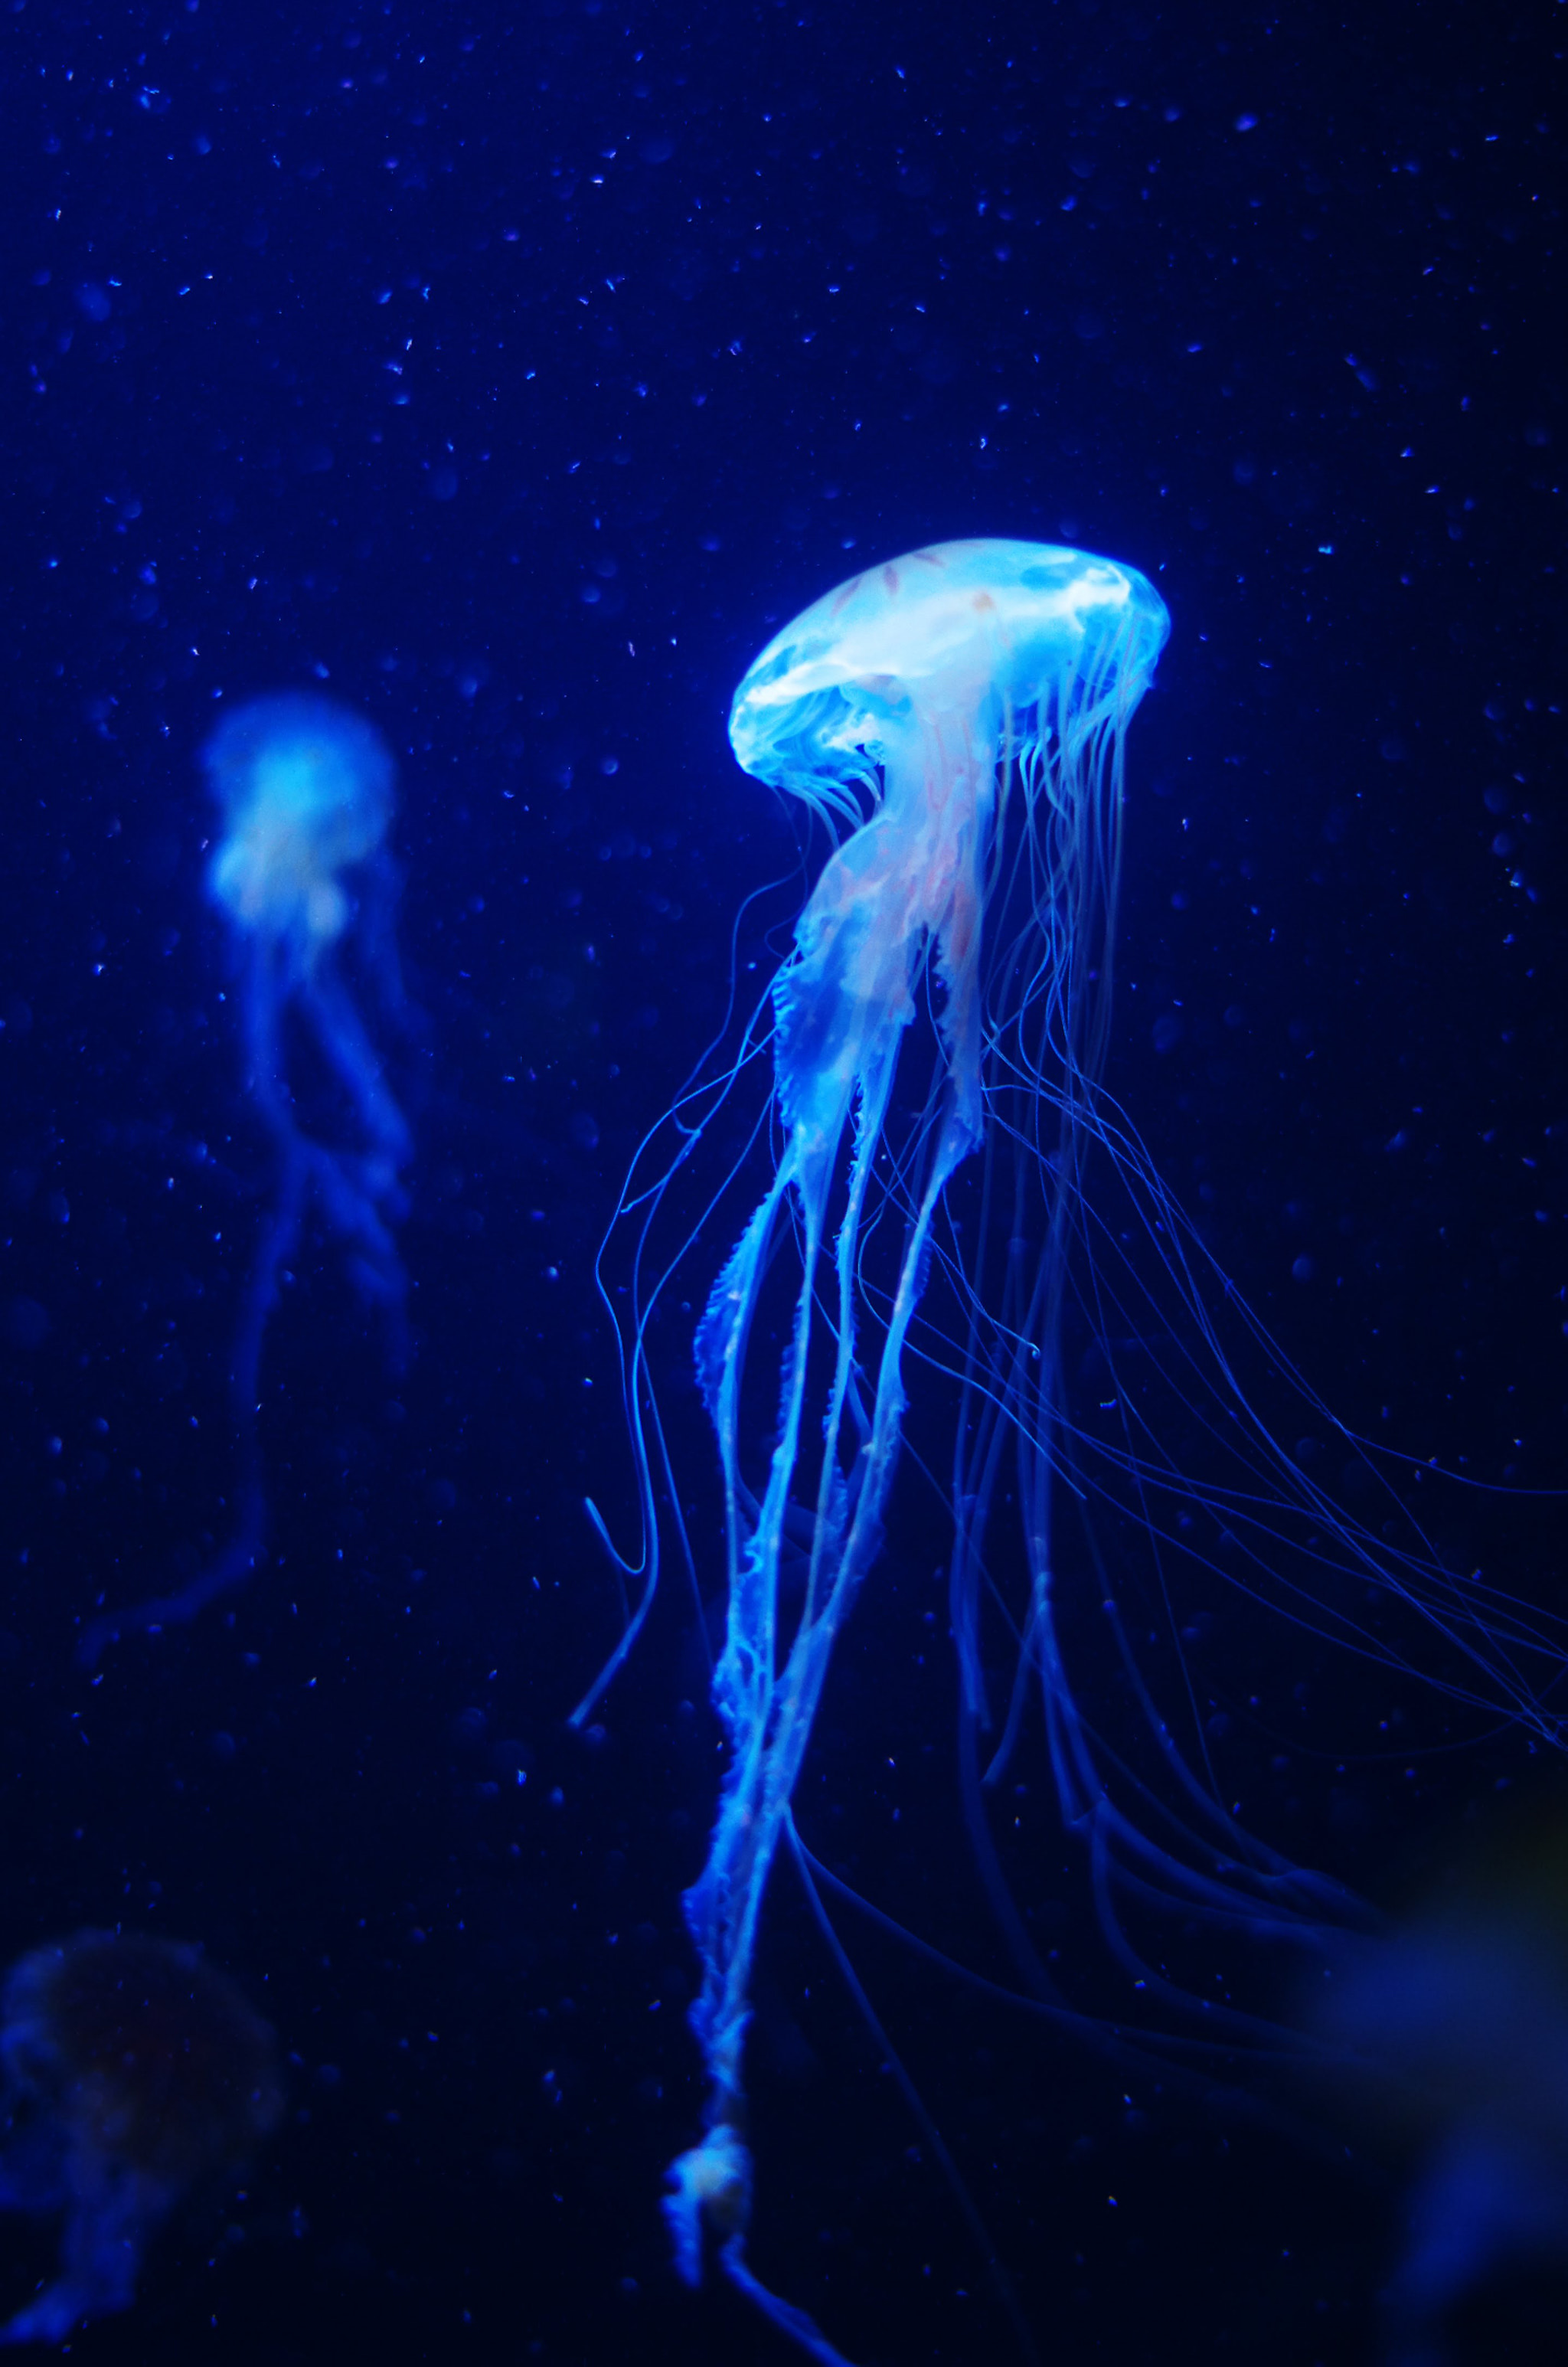 Pentax smc DA 50mm F1.8 sample photo. Jellyfish photography